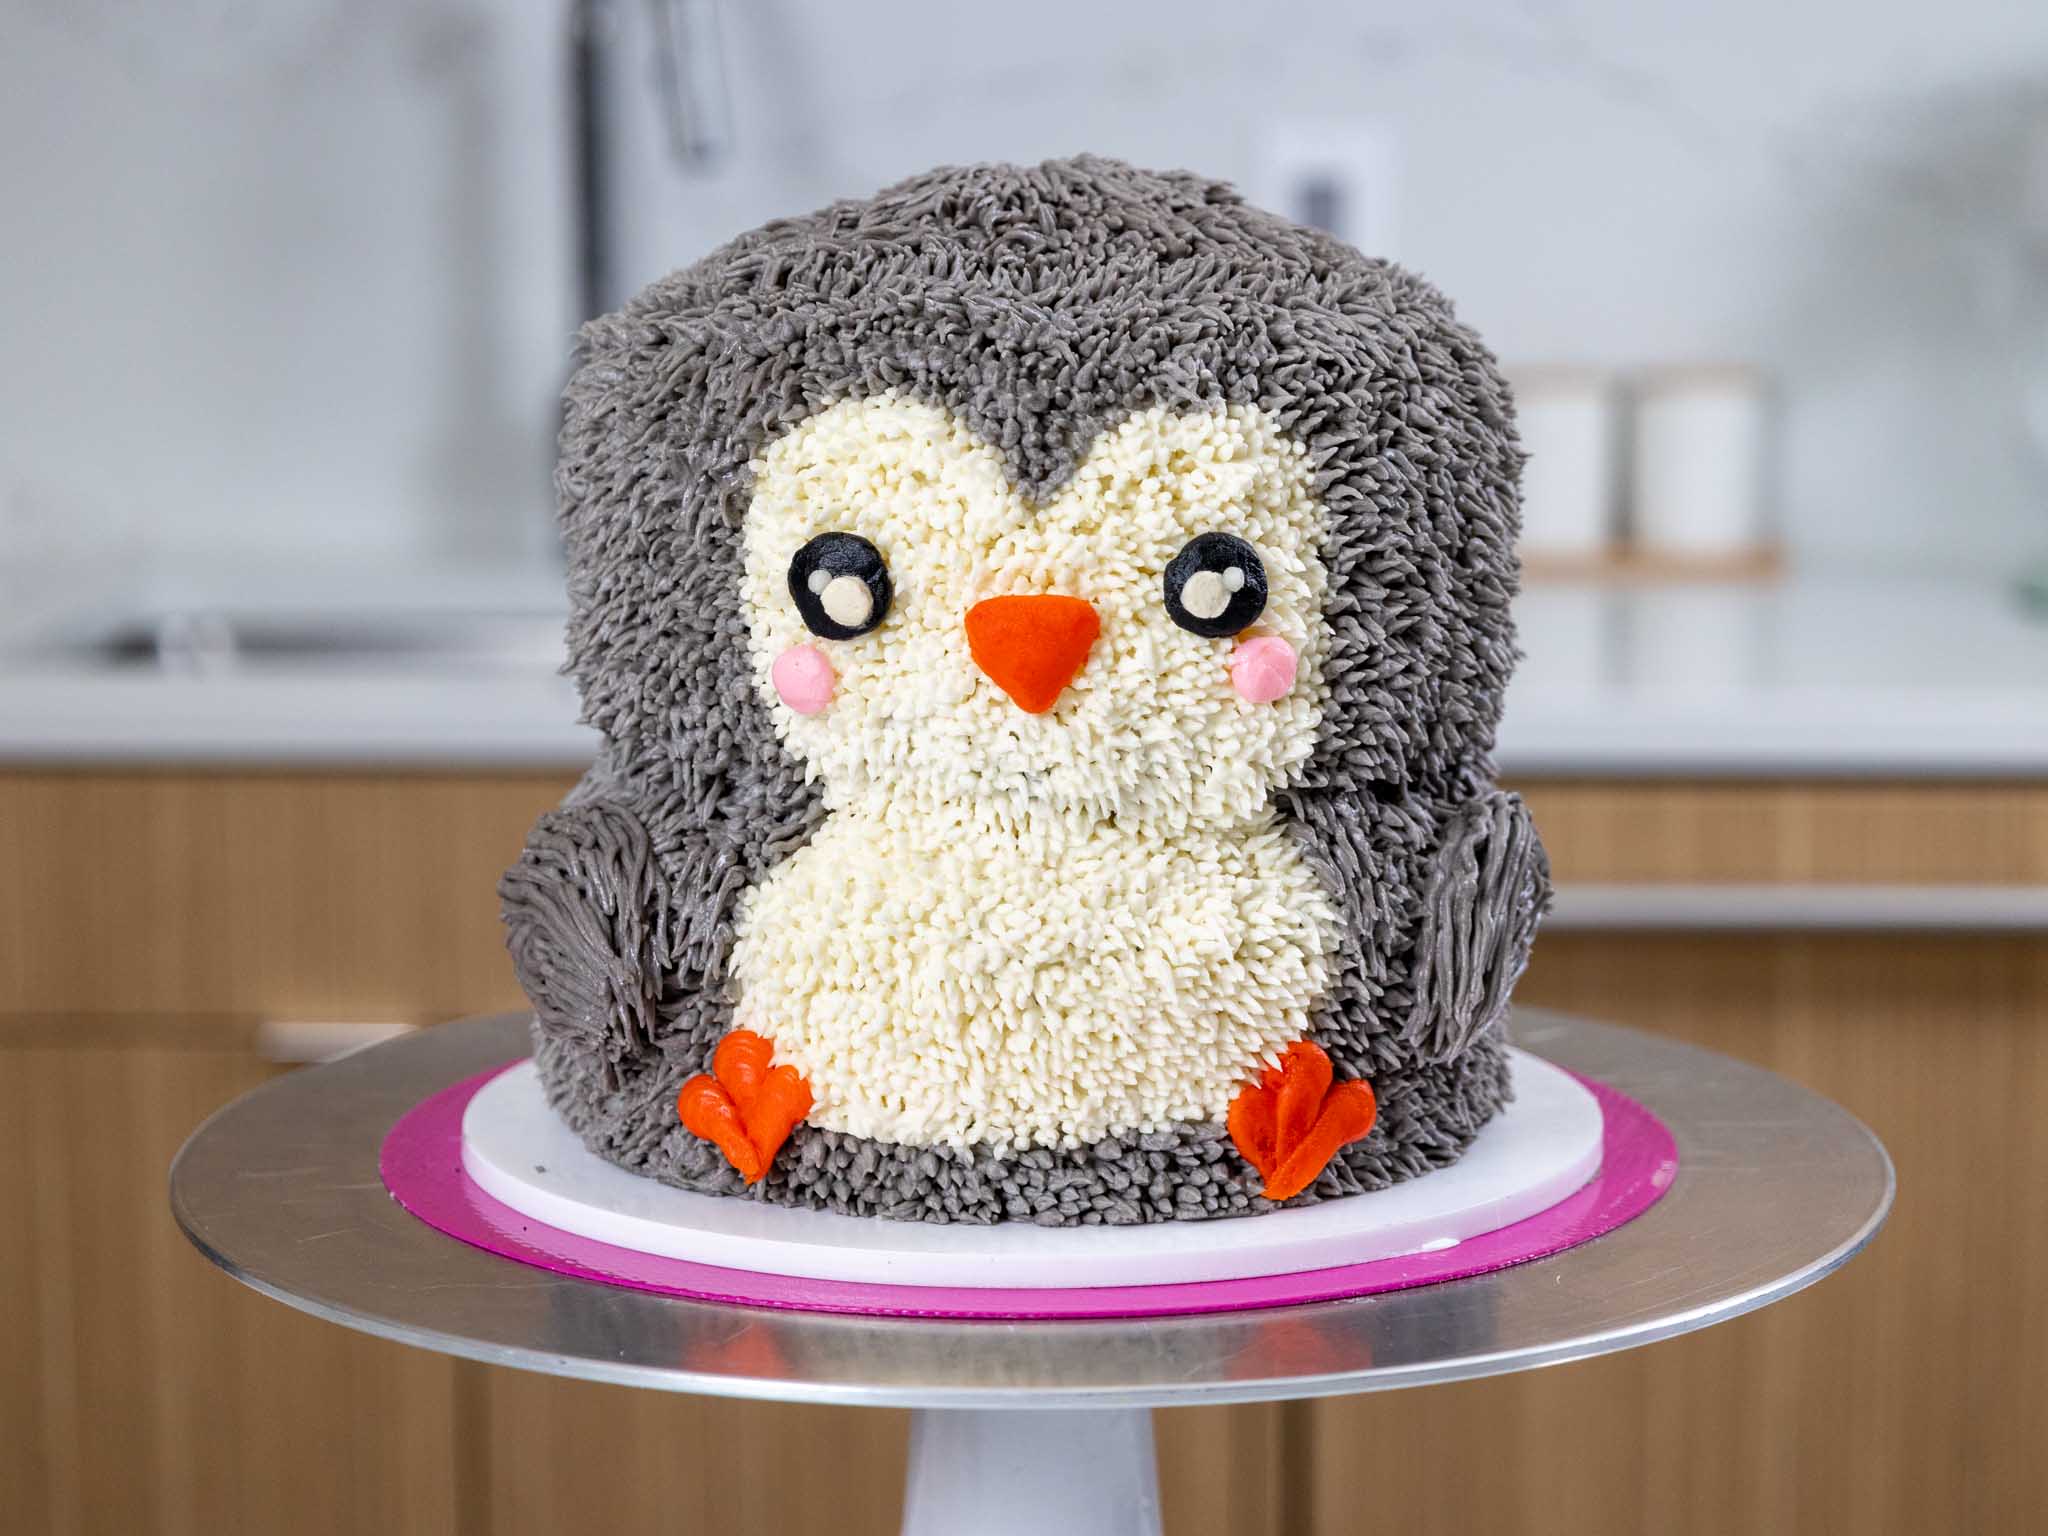 Penguin Cake - Decorated Cake by tatlibirseyler - CakesDecor